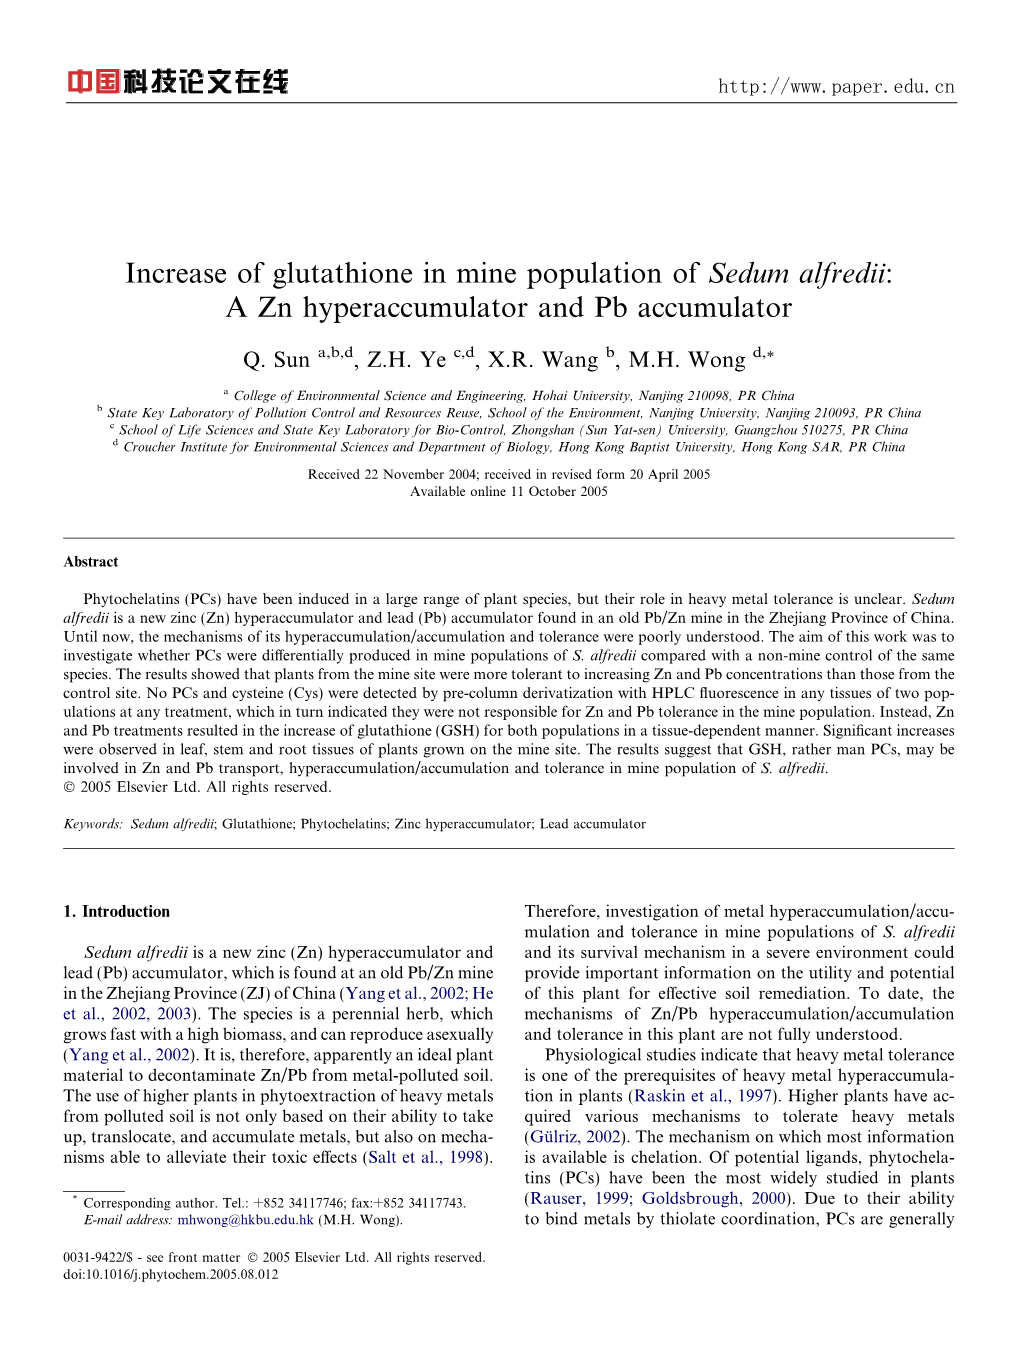 Increase of Glutathione in Mine Population of Sedum Alfredii: a Zn Hyperaccumulator and Pb Accumulator